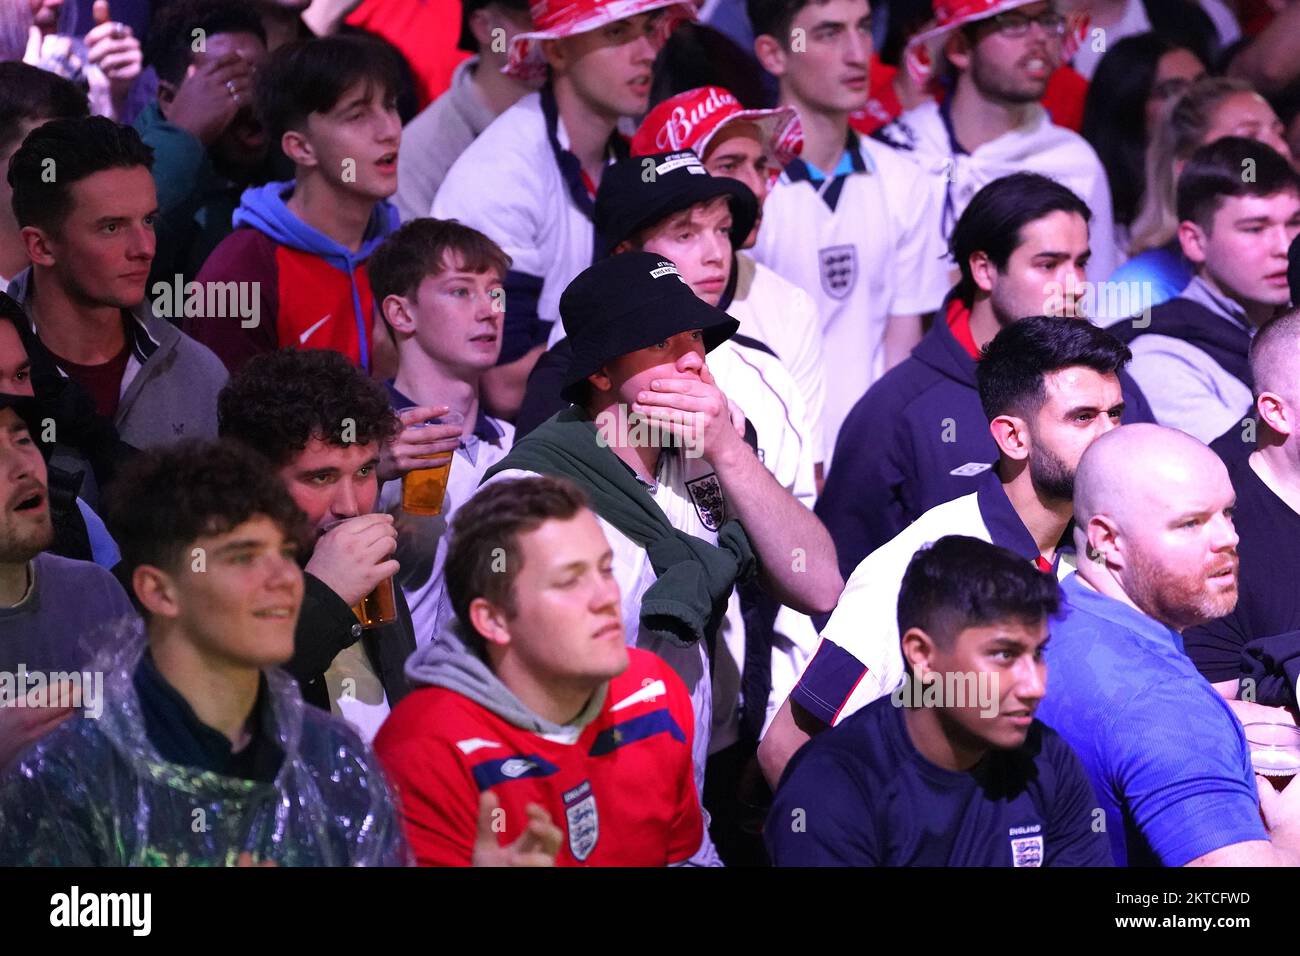 Englische Fans können im BoxPark Croydon während einer Vorführung des FIFA-Weltmeisterschaftsspiels Gruppe B zwischen Wales und England eine Chance verpassen. Foto: Dienstag, 29. November 2022. Stockfoto